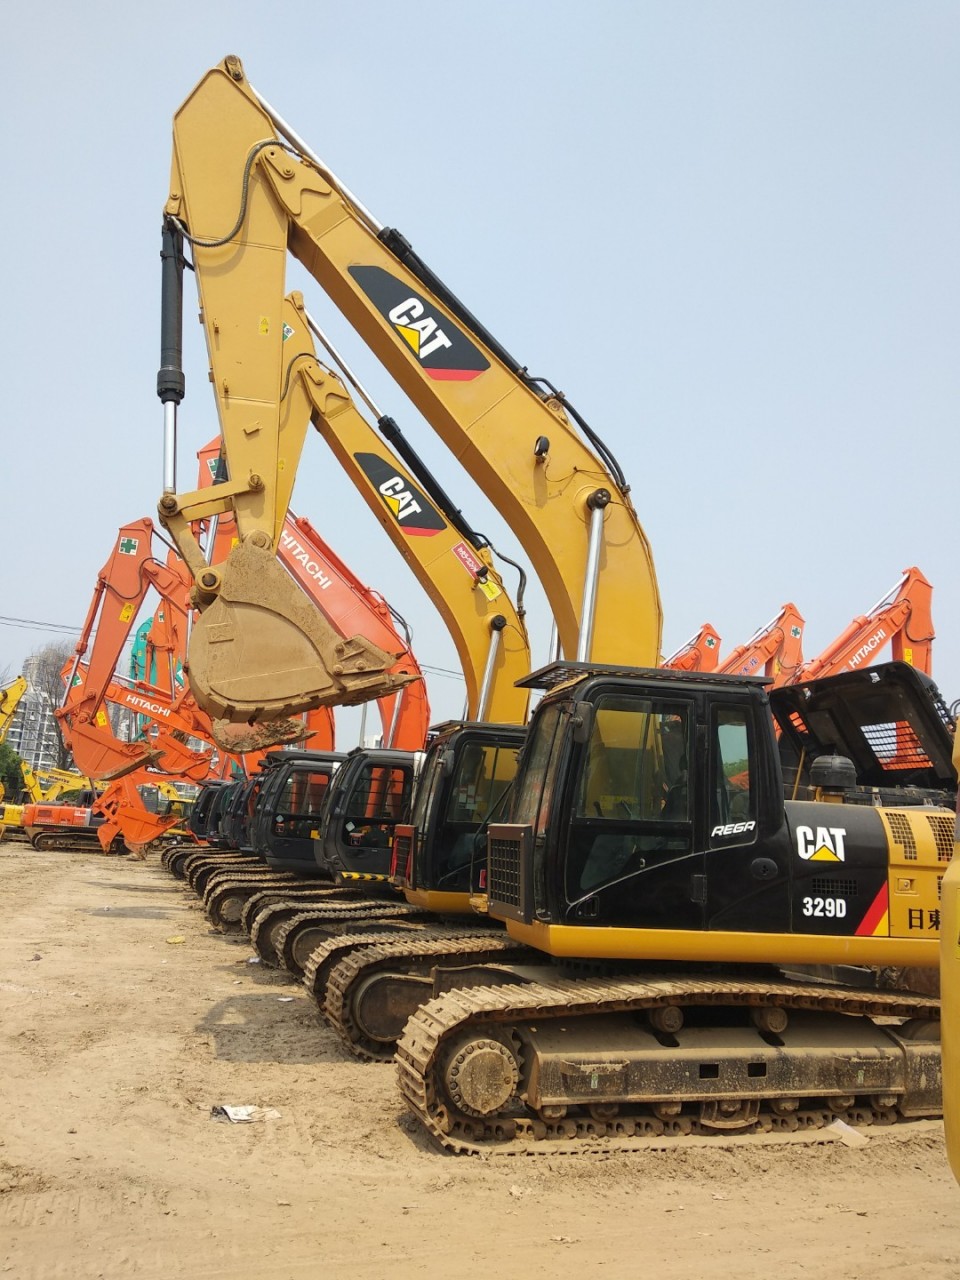 广州||深圳||珠海二手挖掘机市场||出售二手小松240-360挖掘机